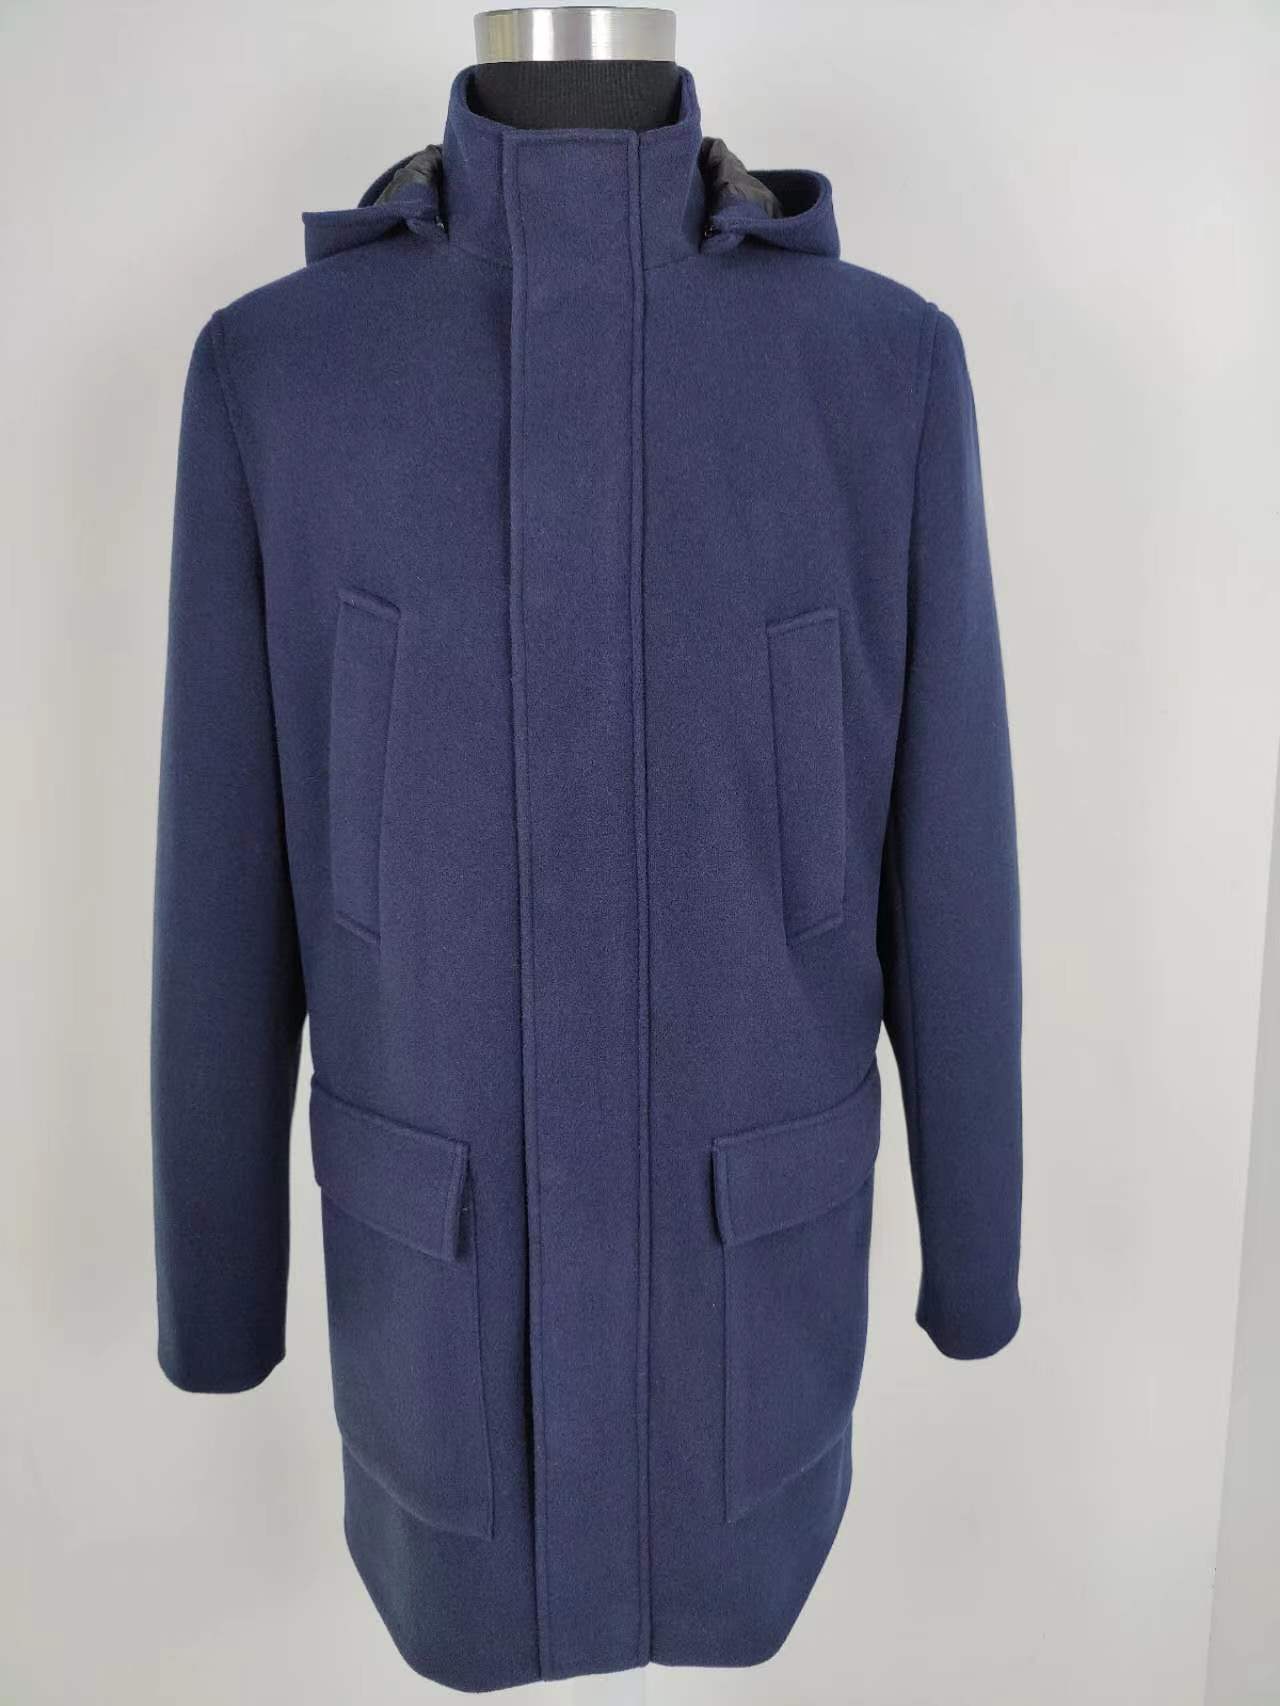 navy blue long jacket